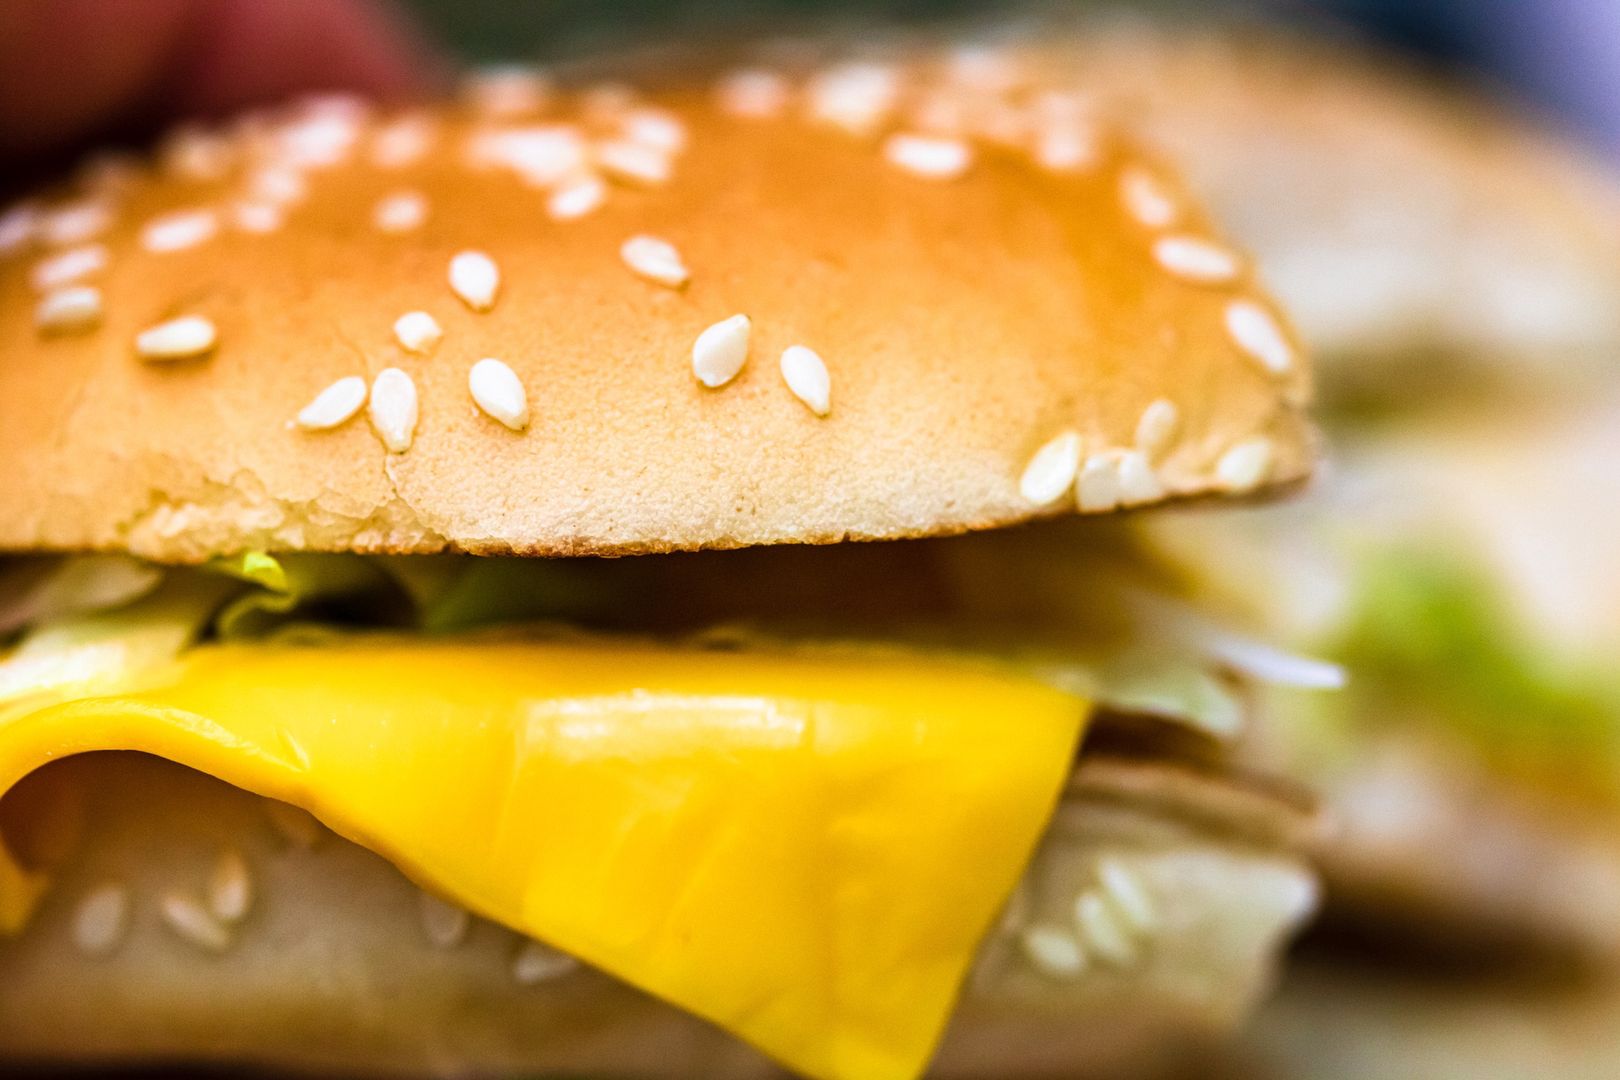 Domowe cheeseburgery jak z McDonalda. Zdrowsze i wciąż smaczne